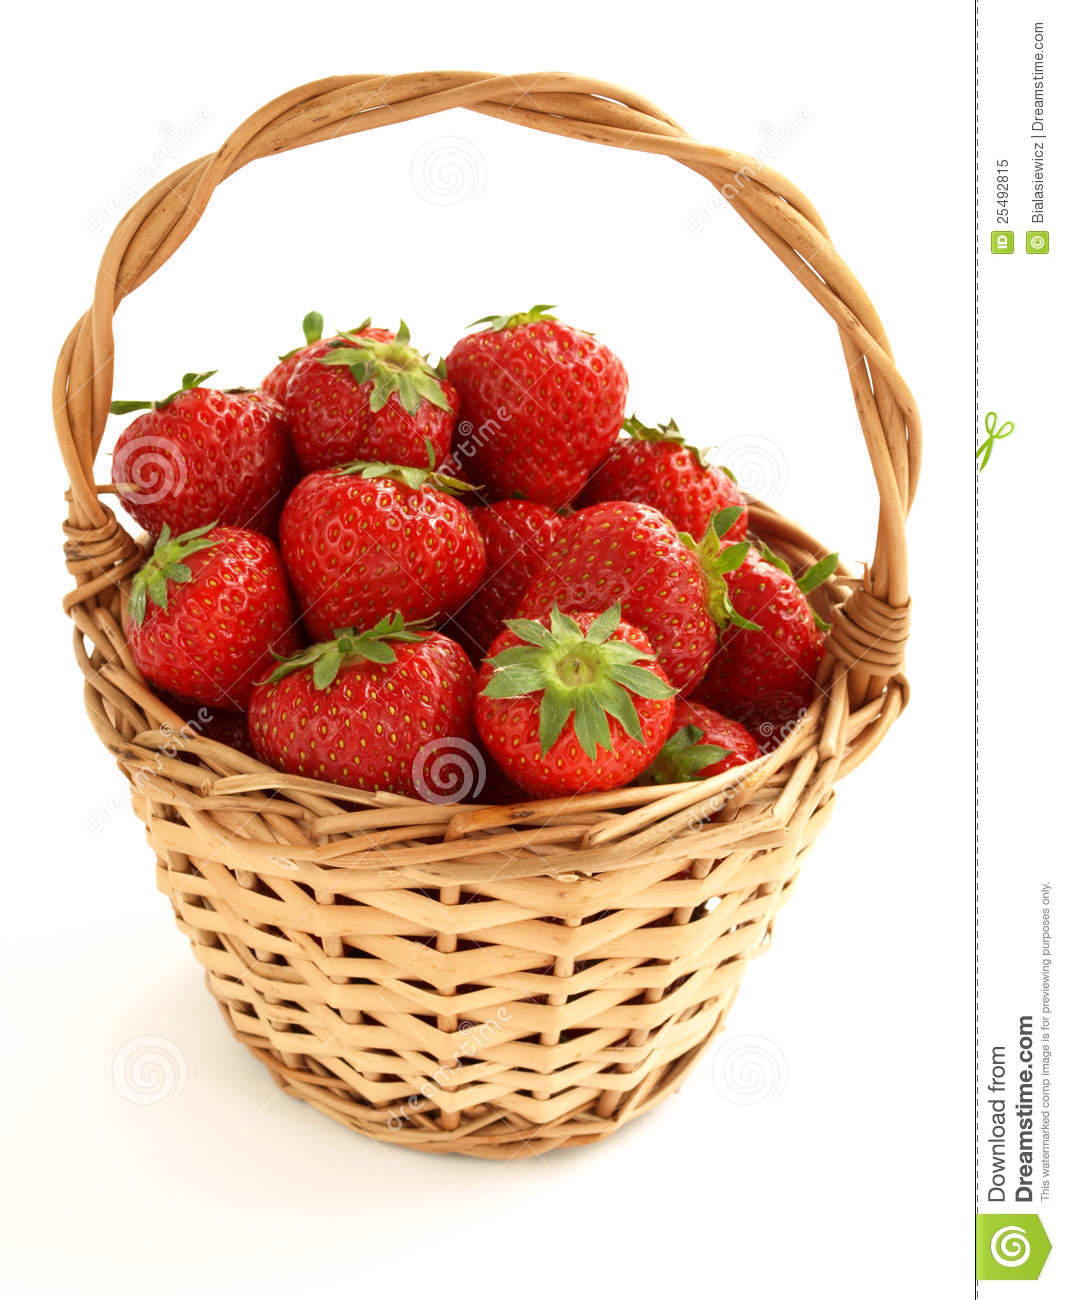 Strawberry Basket Royalty Free Stock Photo   Image  25492815